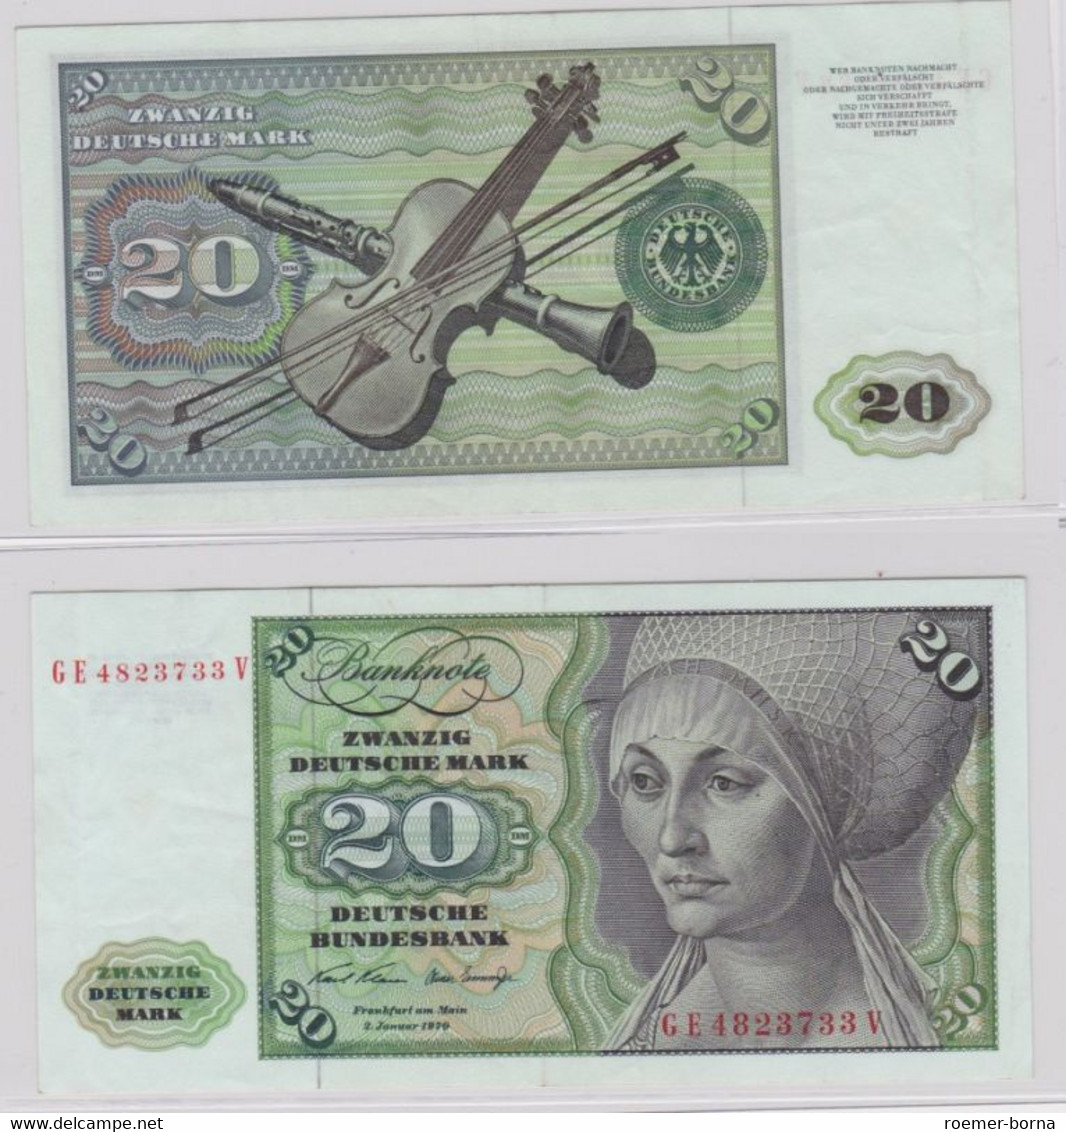 T145698 Banknote 20 DM Deutsche Mark Ro. 271b Schein 2.Jan. 1970 KN GE 4823733 V - 20 Deutsche Mark